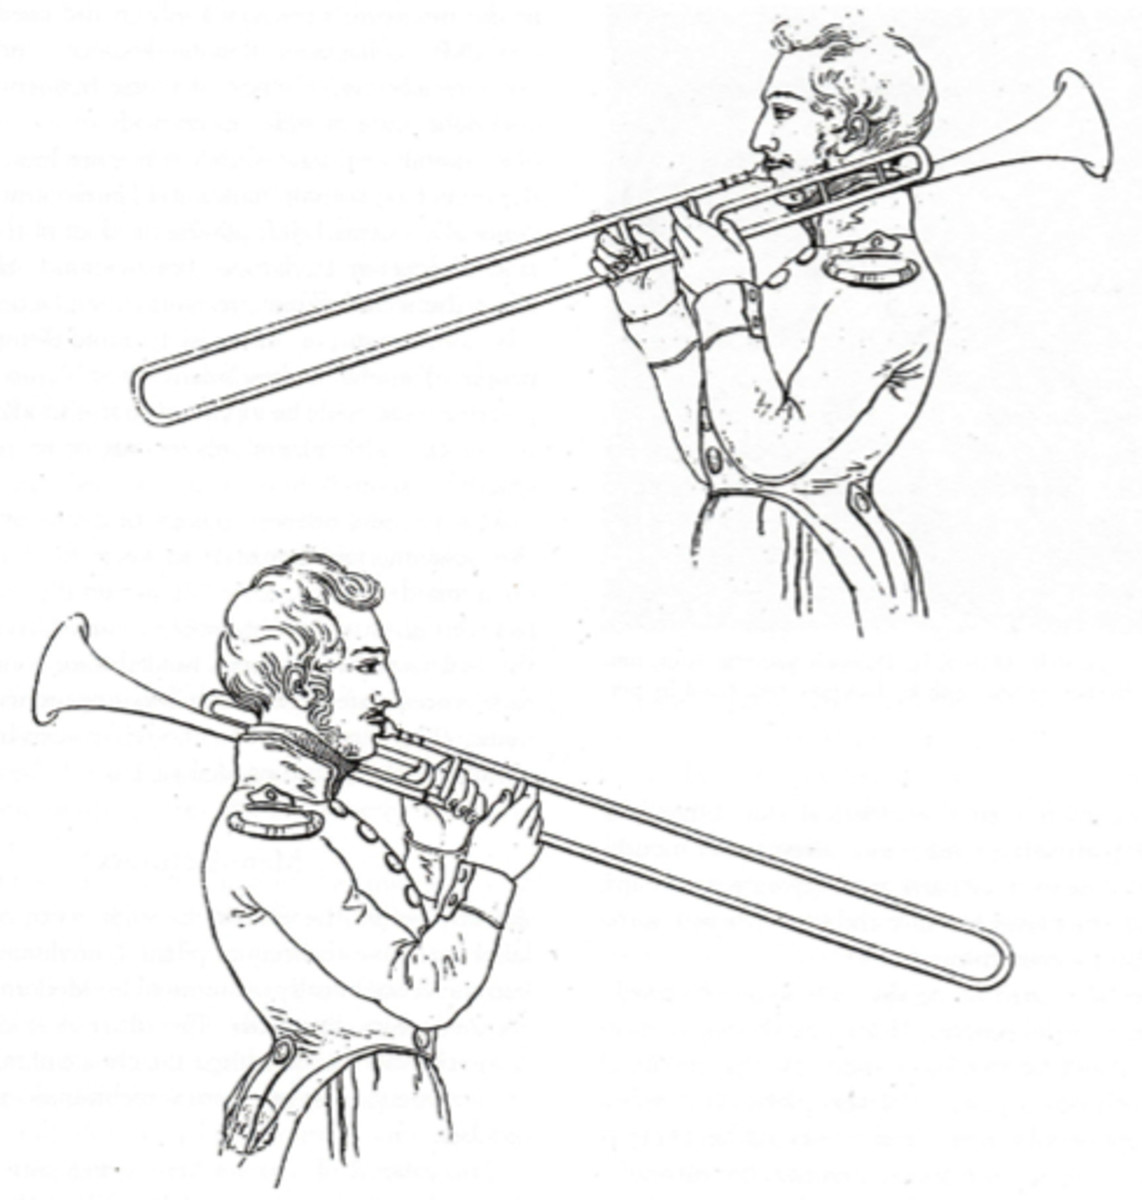 backward-bones-rear-facing-trombones-throughout-history